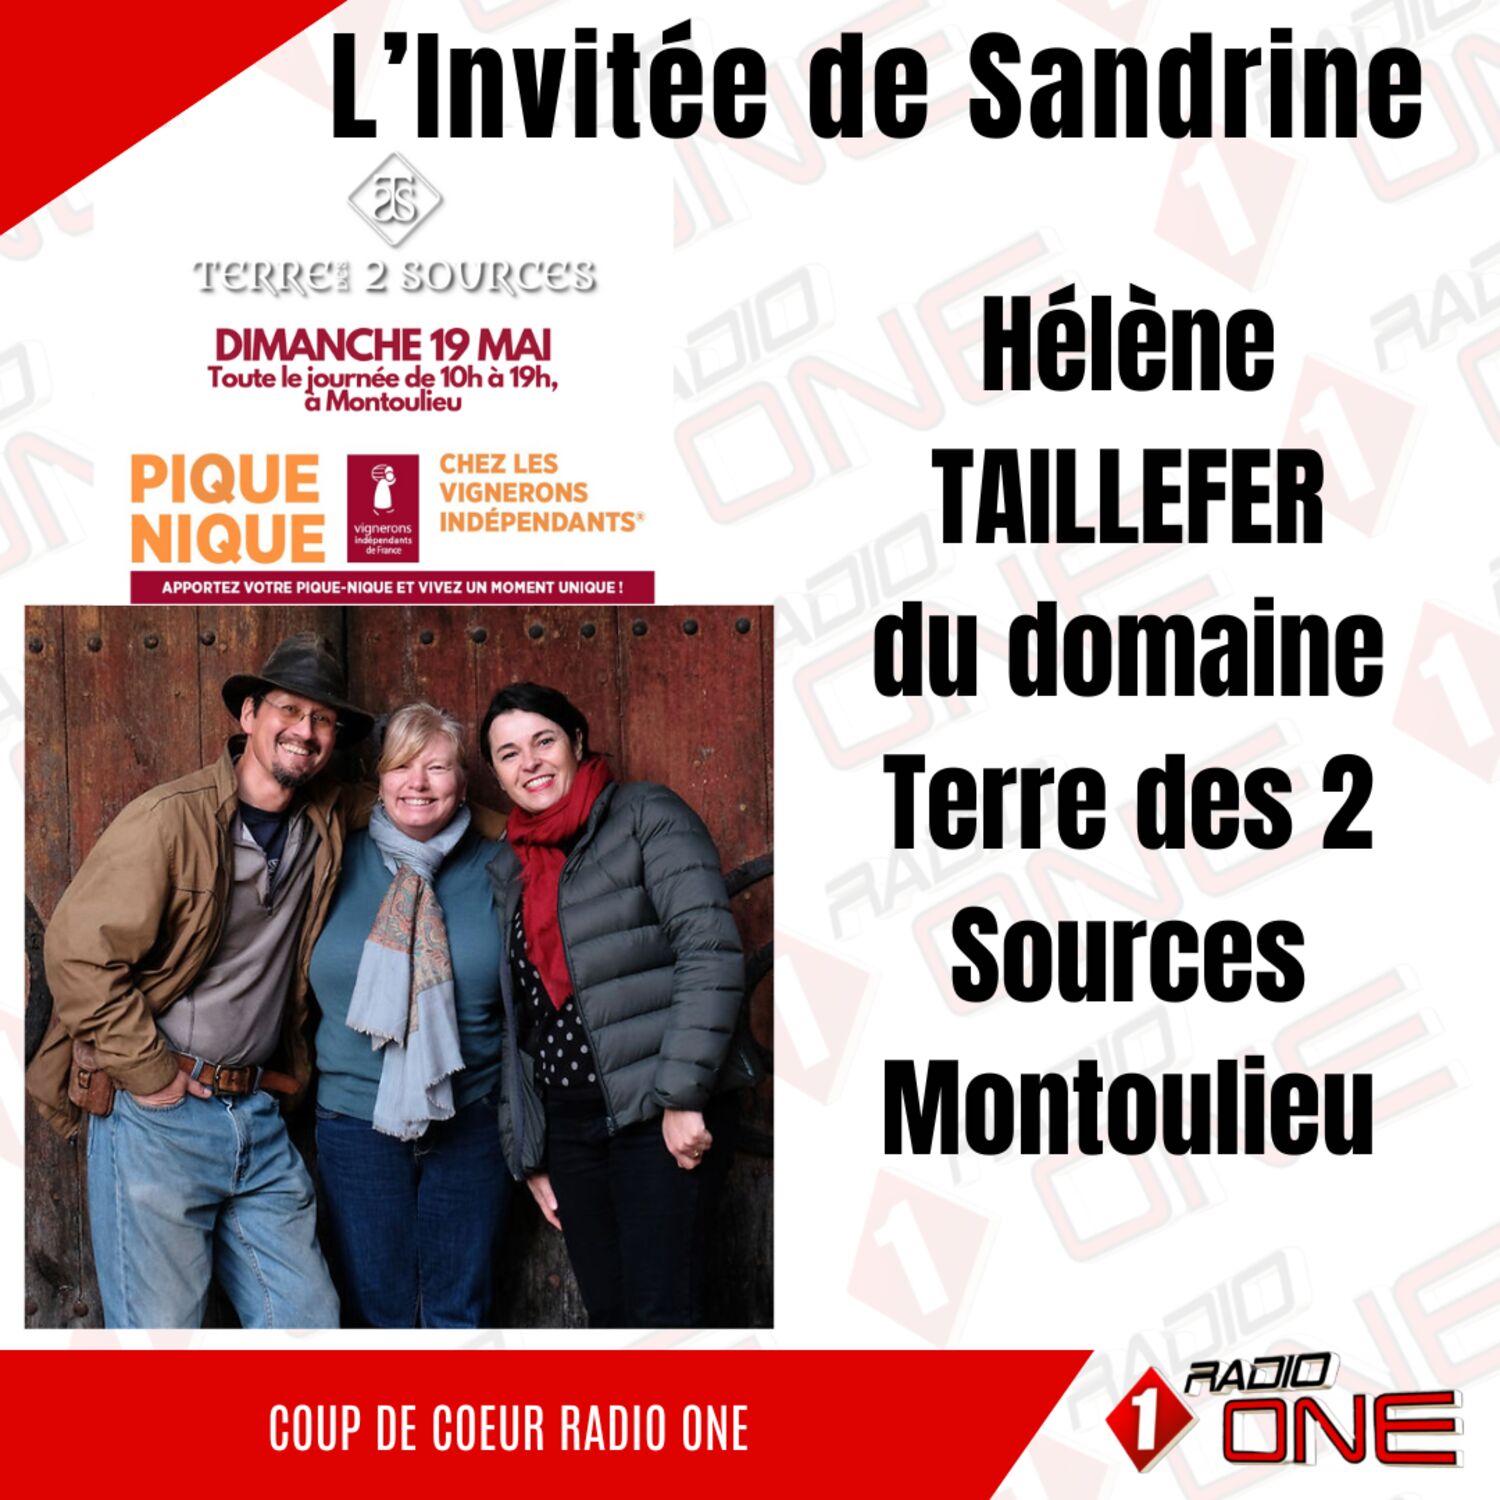 Hélène TAILLEFER du Domaine Terre des 2 Sources à Montoulieu